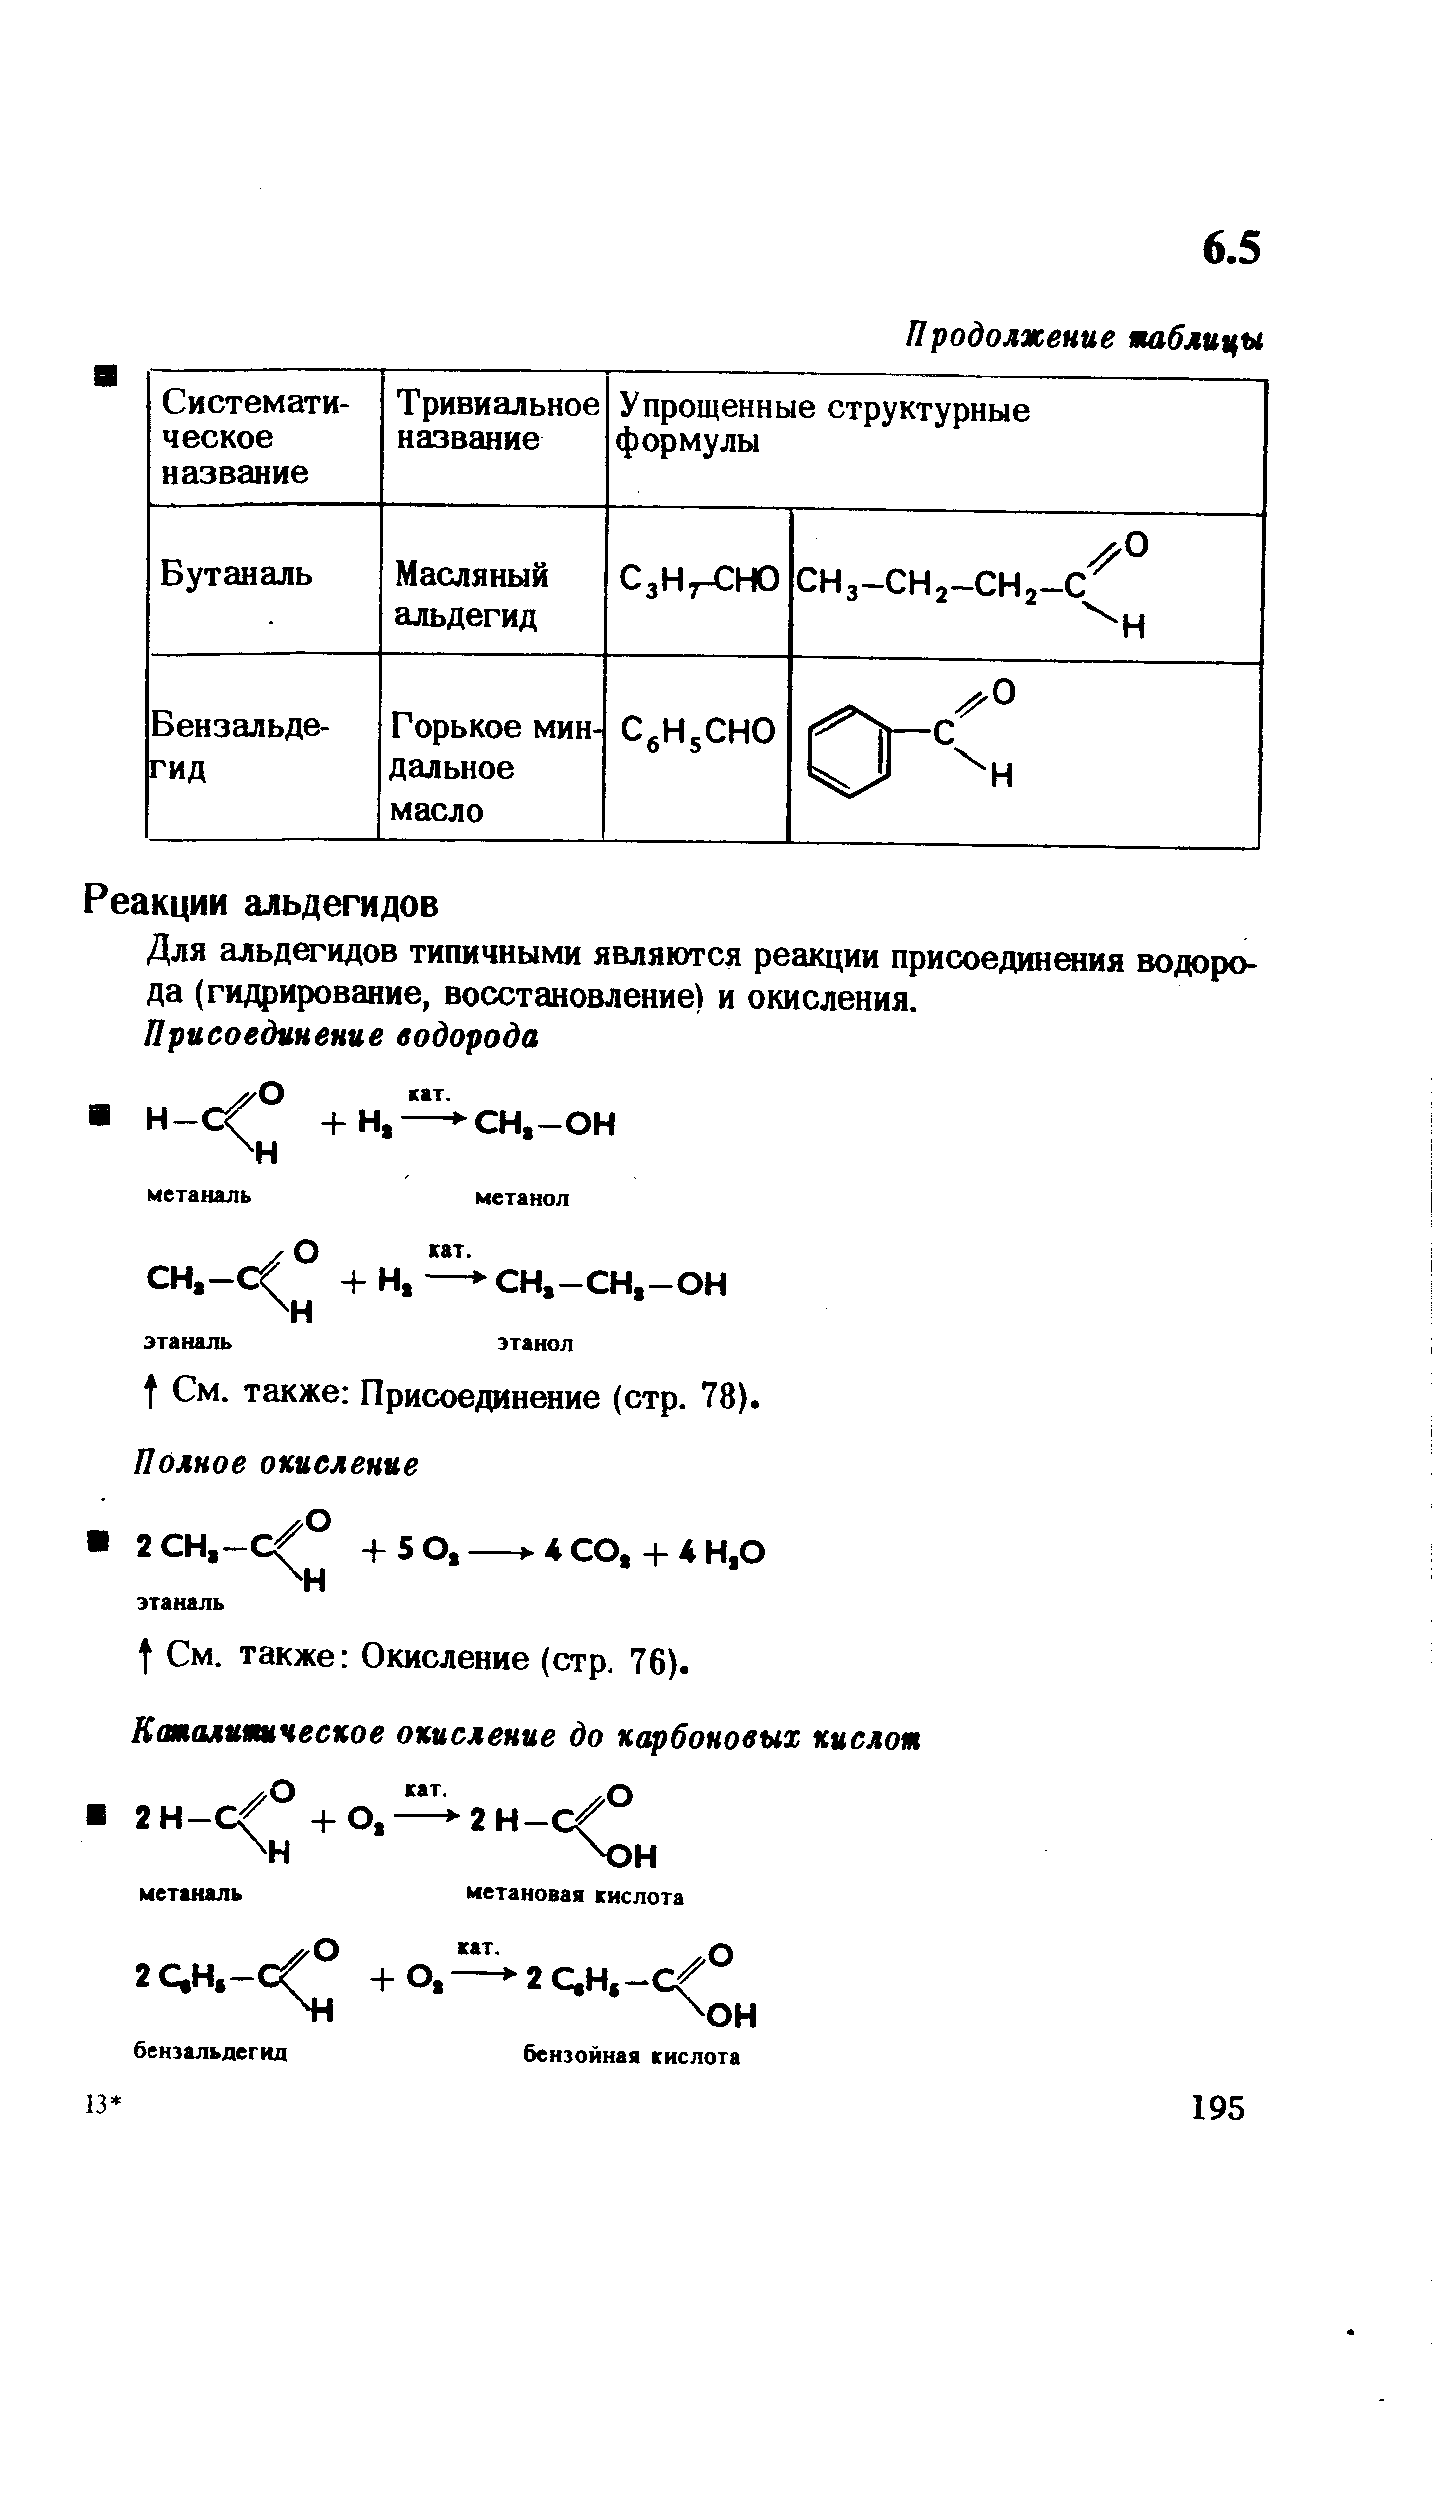 Для альдегидов типичными являются реакции присоединения водорода (гидрирование, восстановление) и окисления.